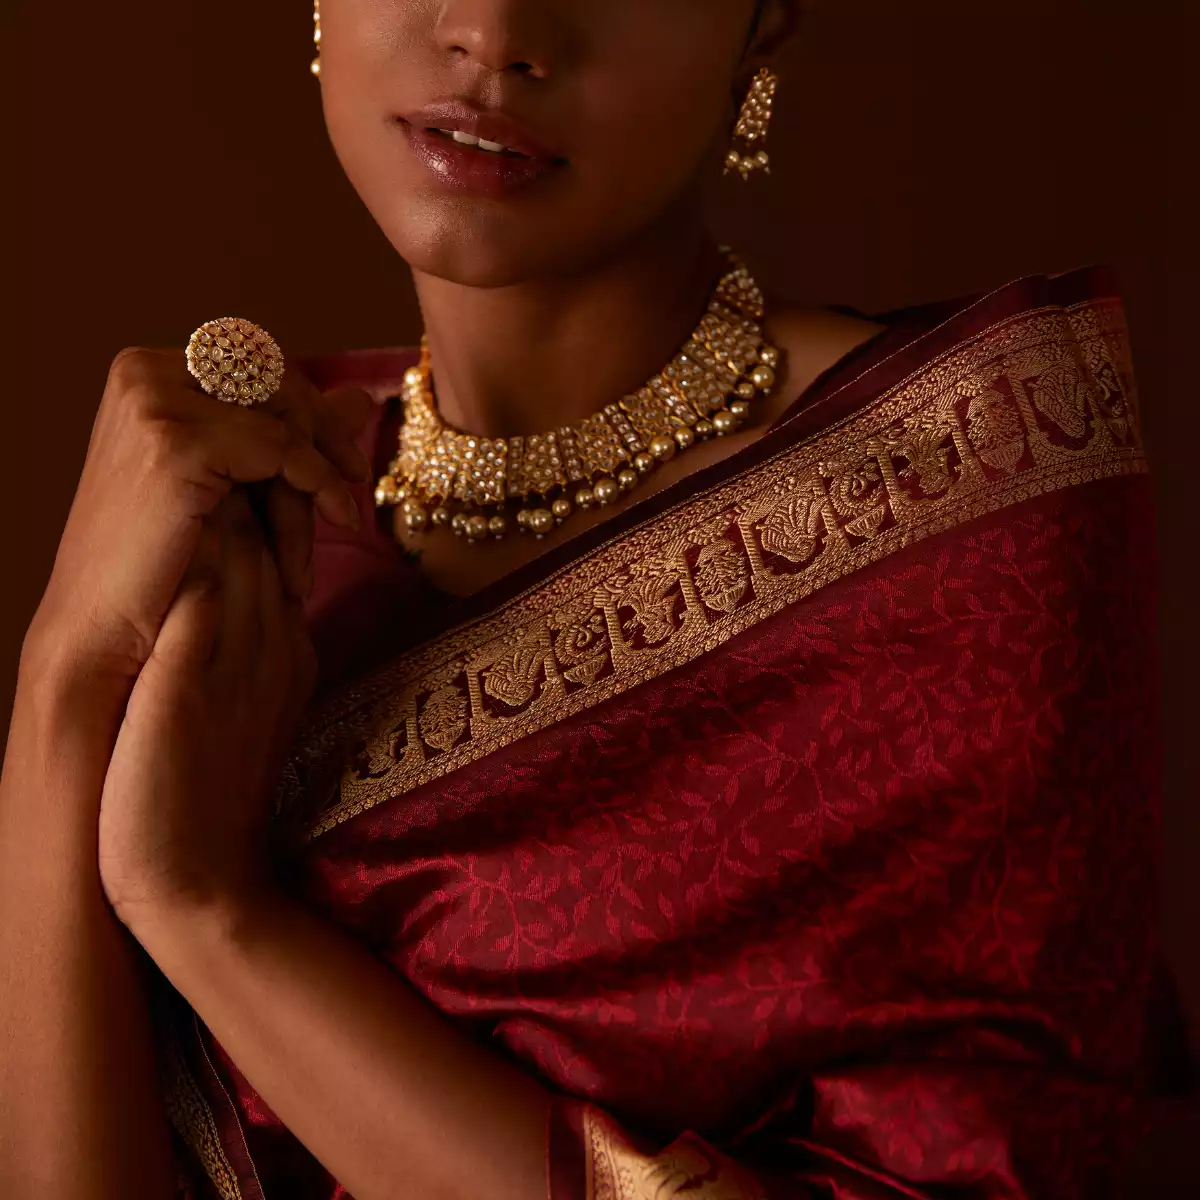 Šperky z Indie